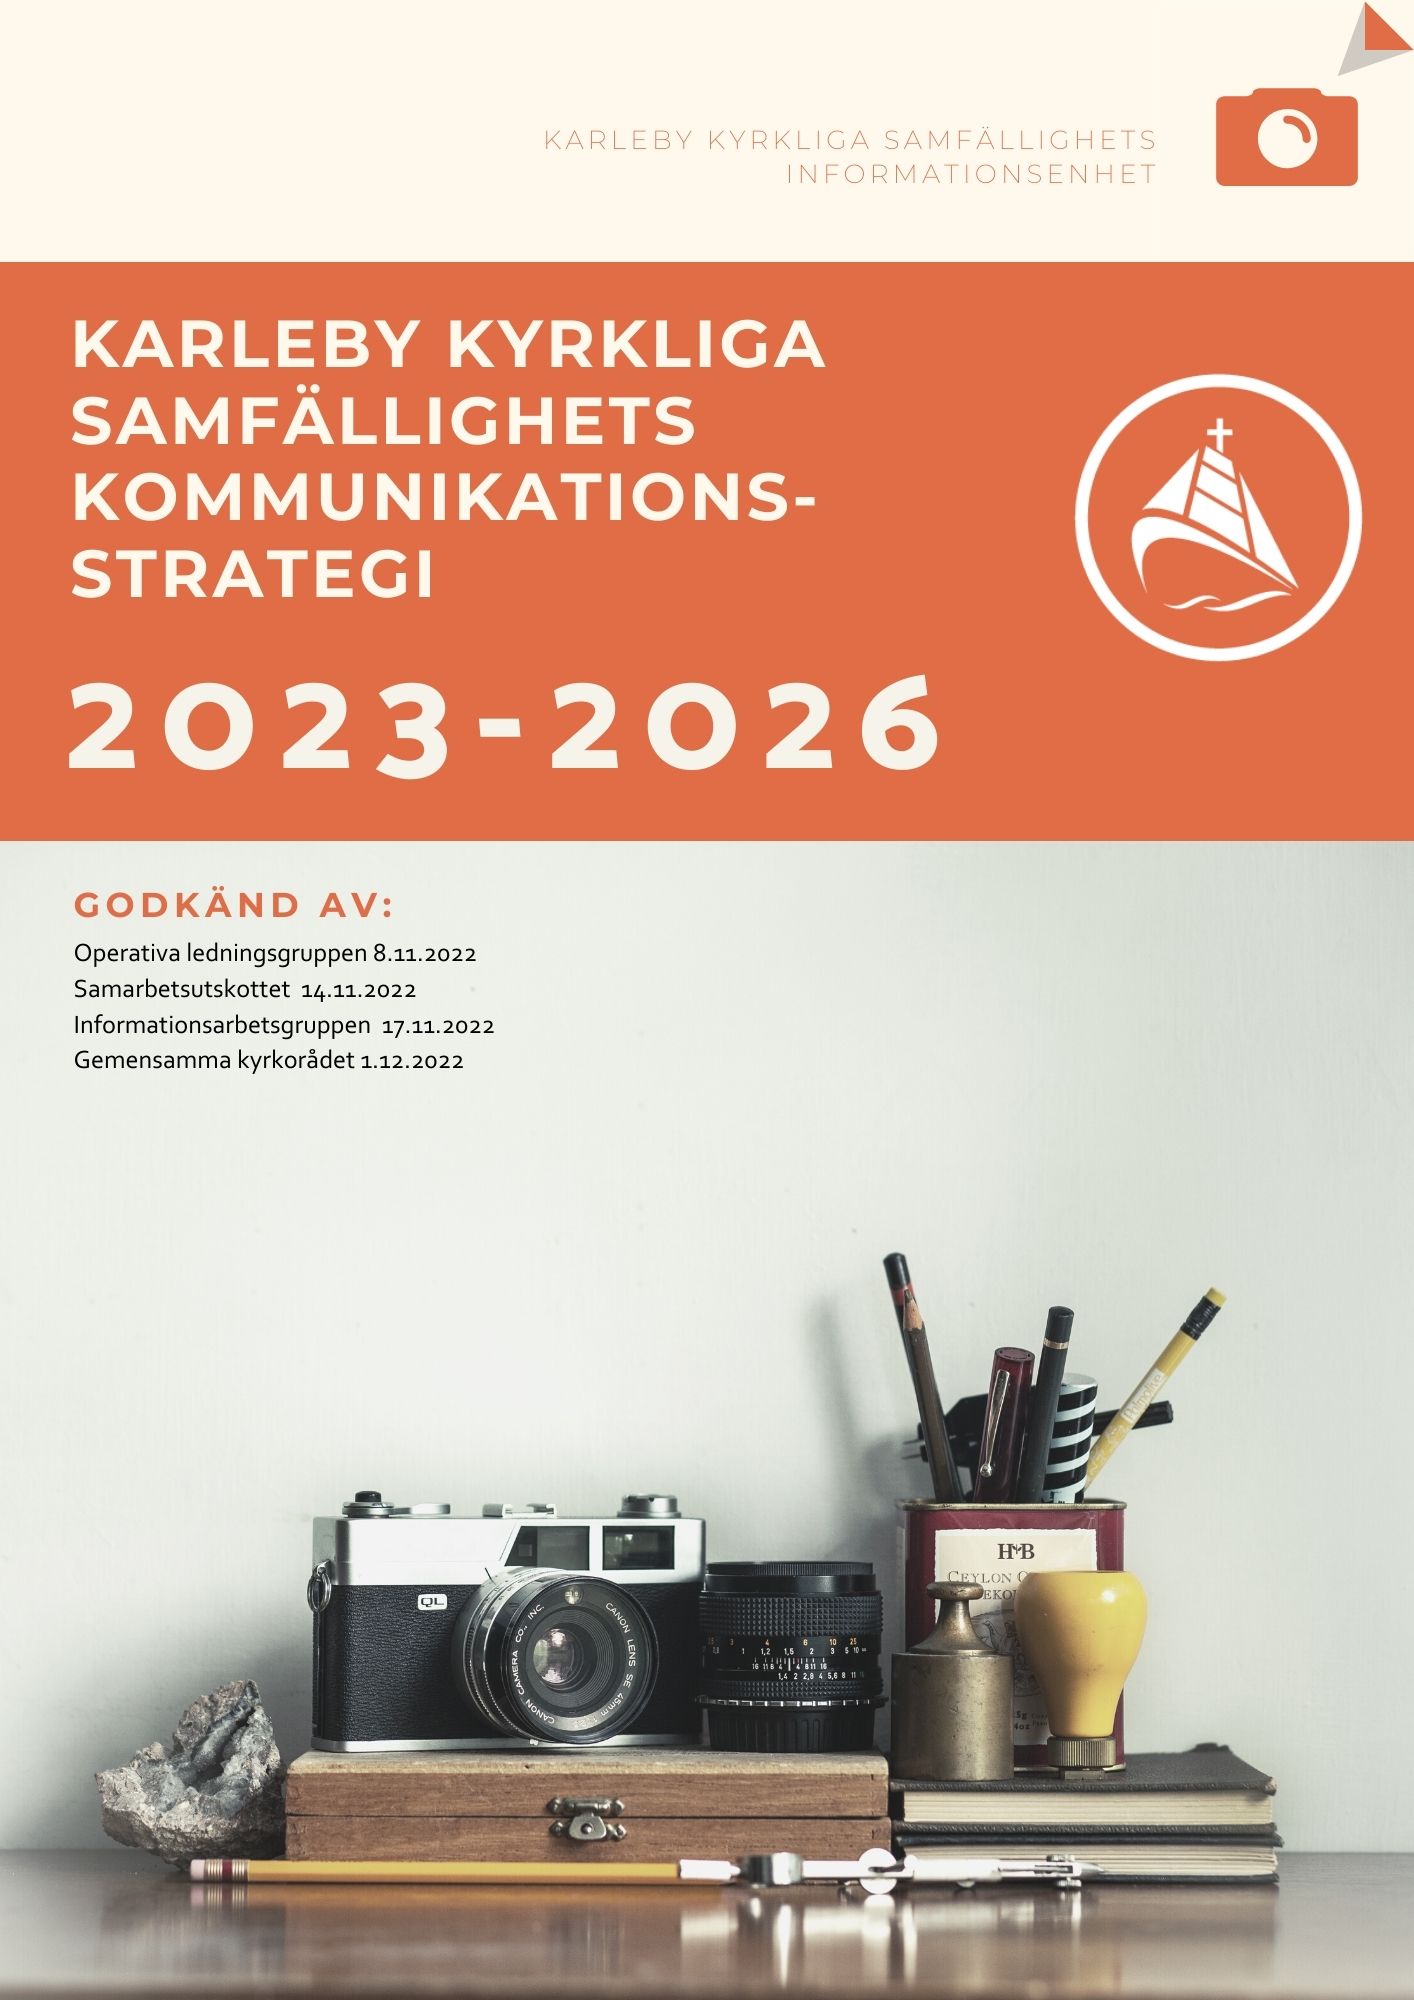 Framsidan av kommunikationsstrategin med bild av kamera och pennor.